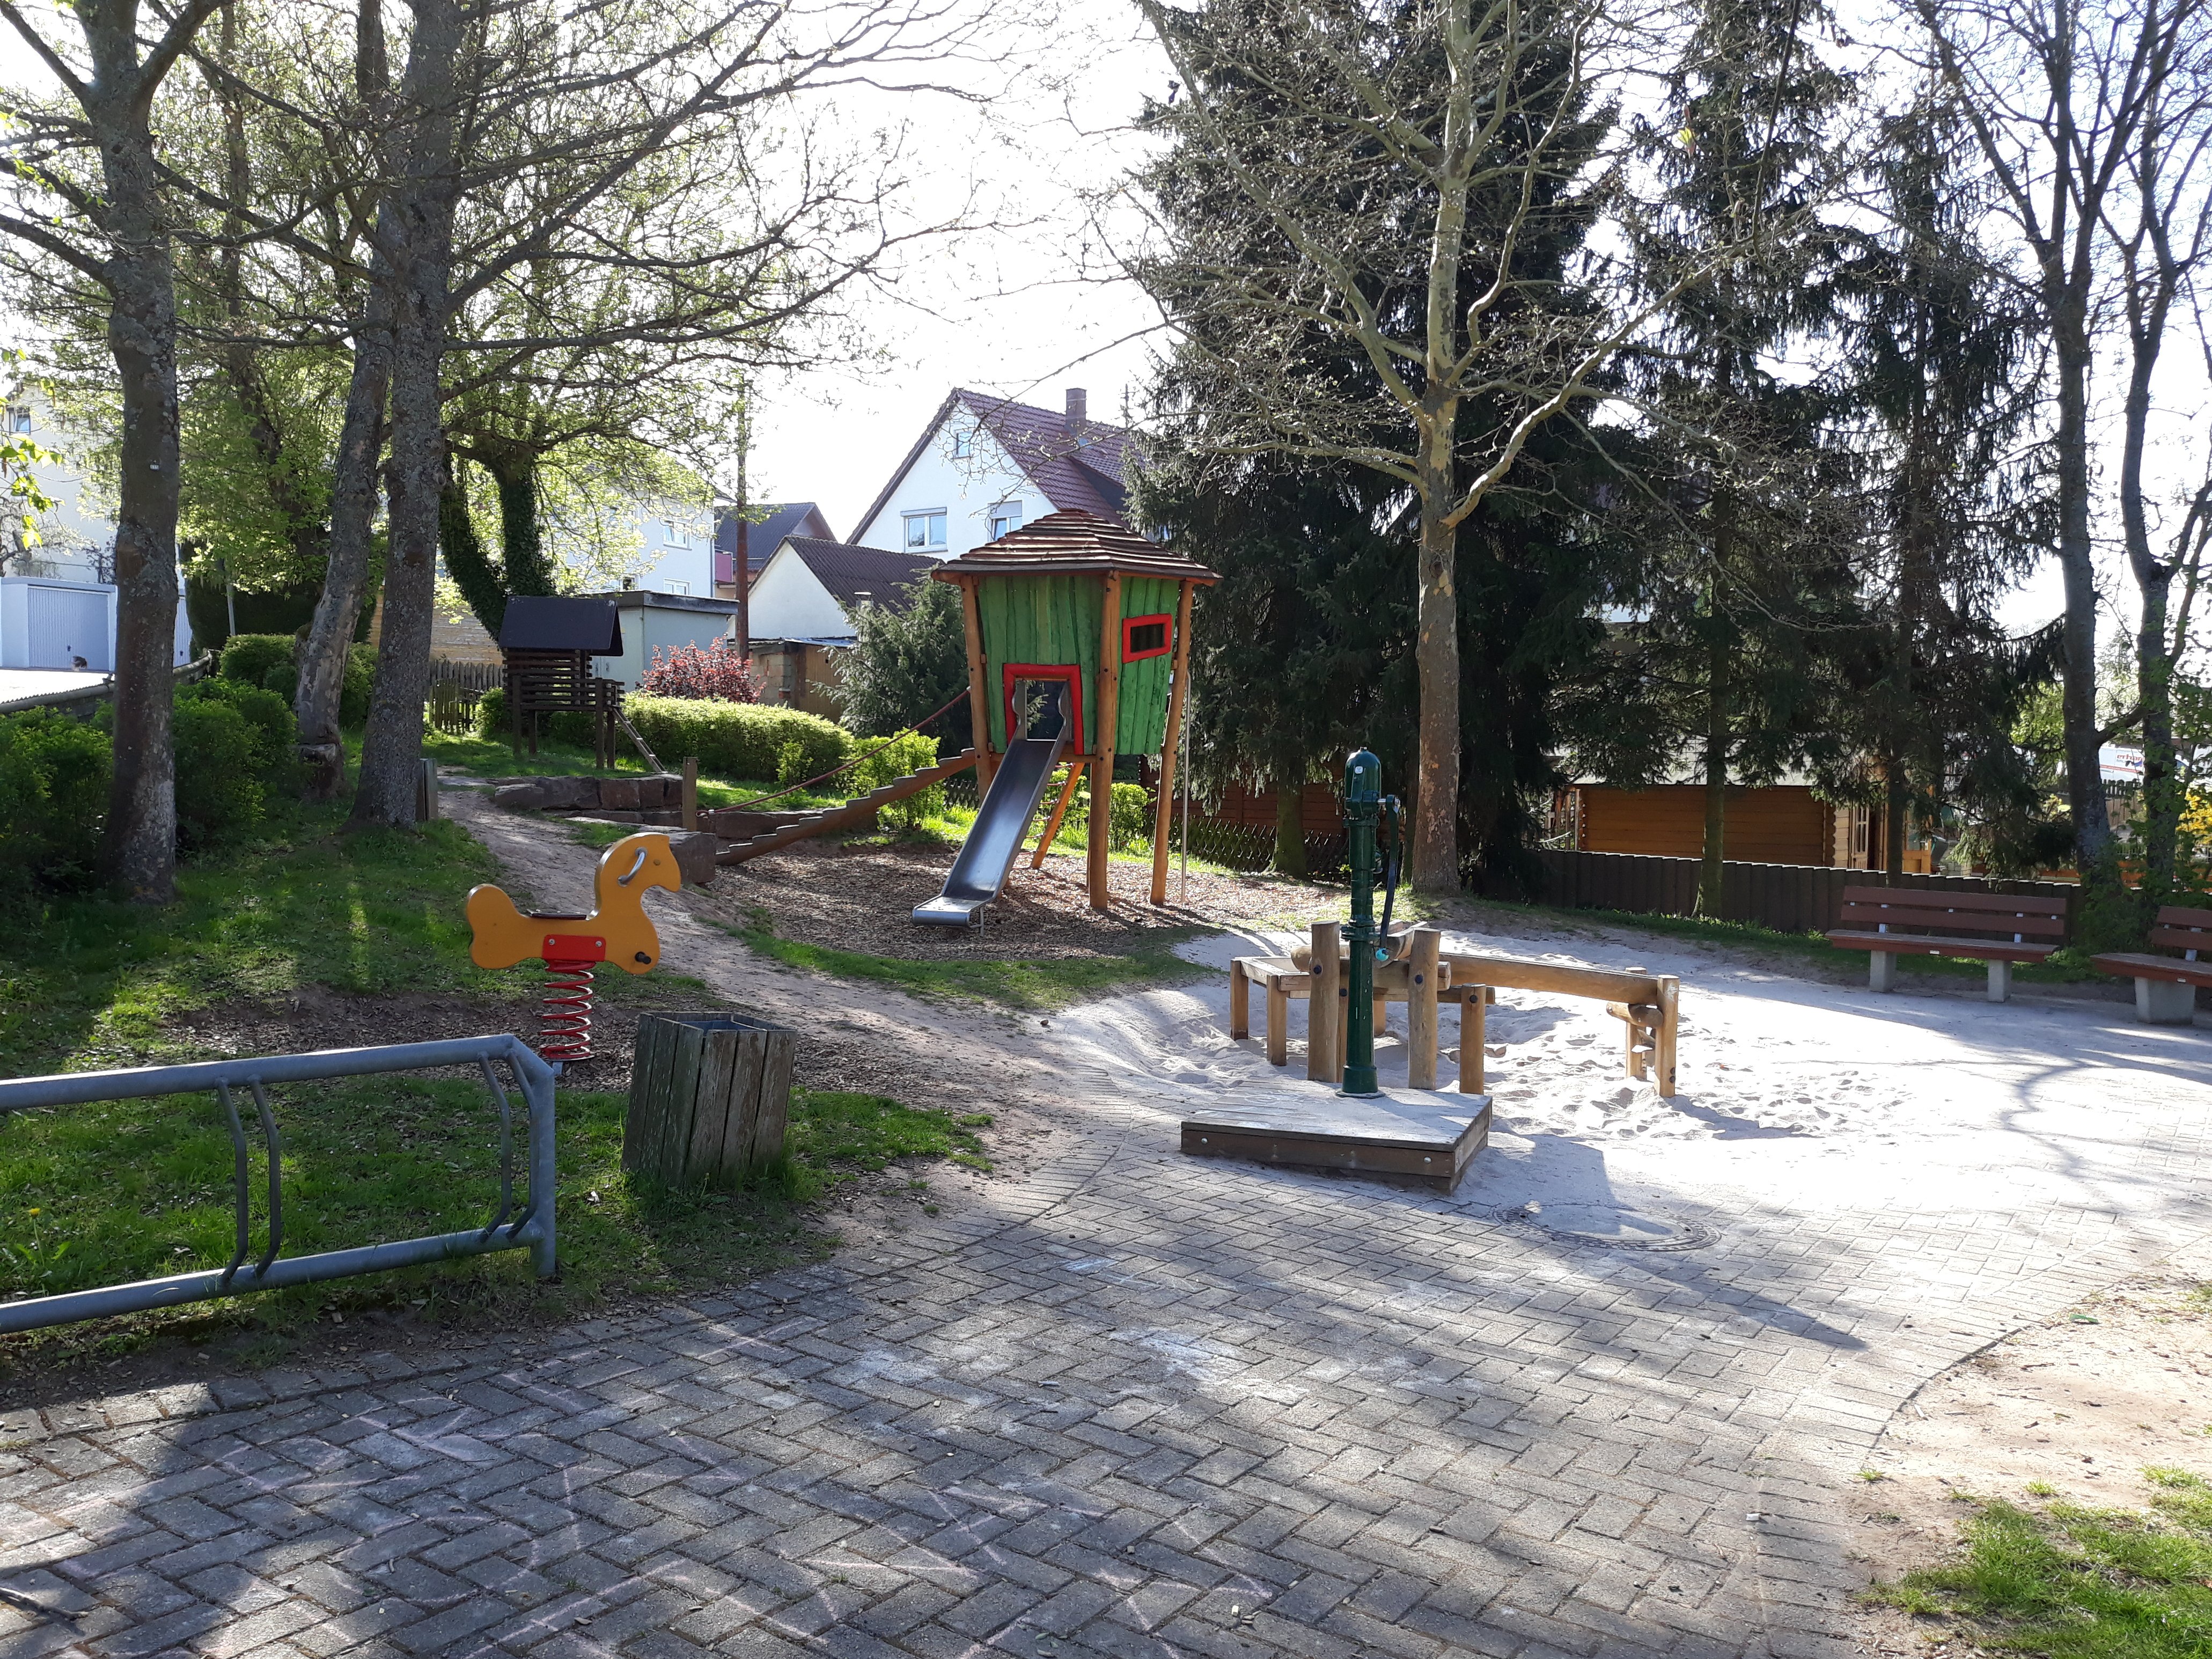 Spielplatz Schulstraße mit Blick auf das Sandspielgerät, das Federwippgerät und den Spielturm mit Rutsche